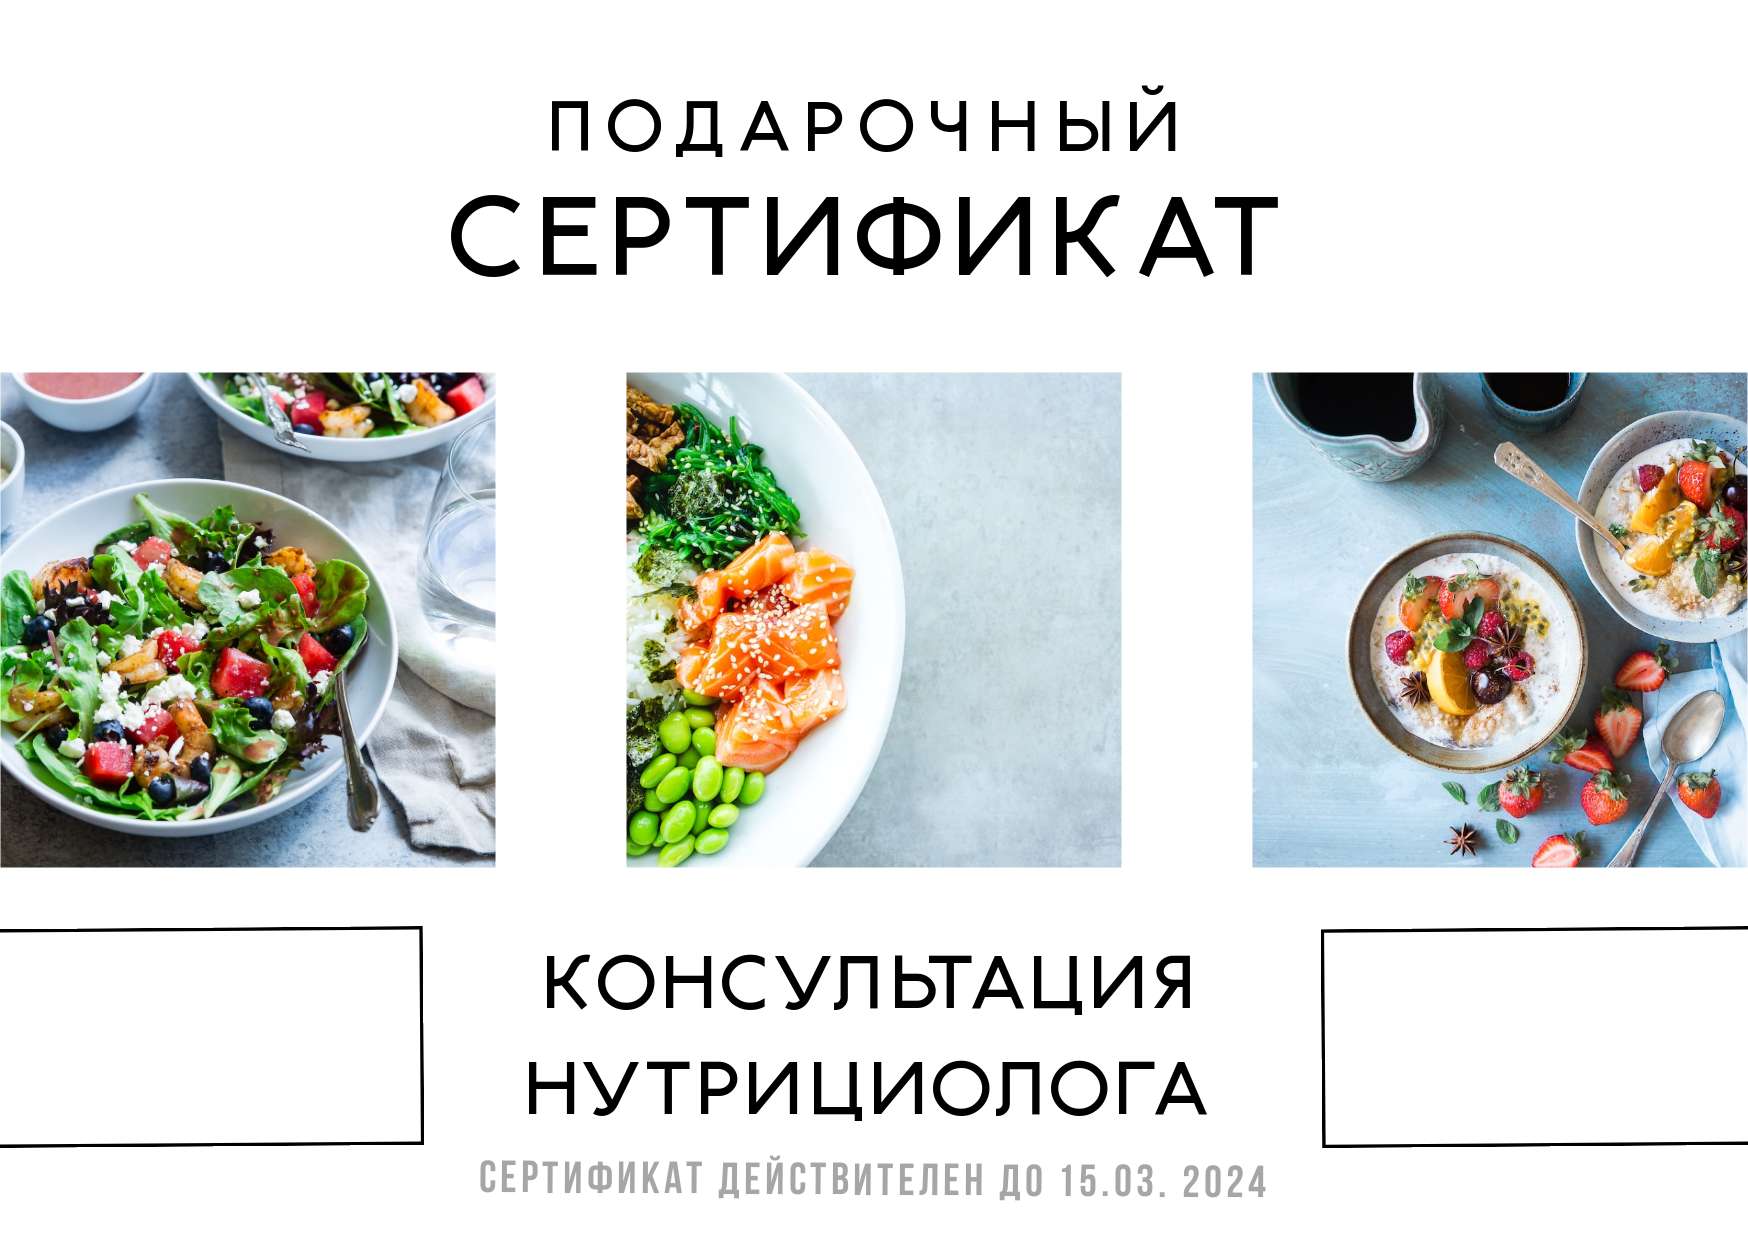 Светлый сертификат с фотографиями еды для консультации у нутрициолога